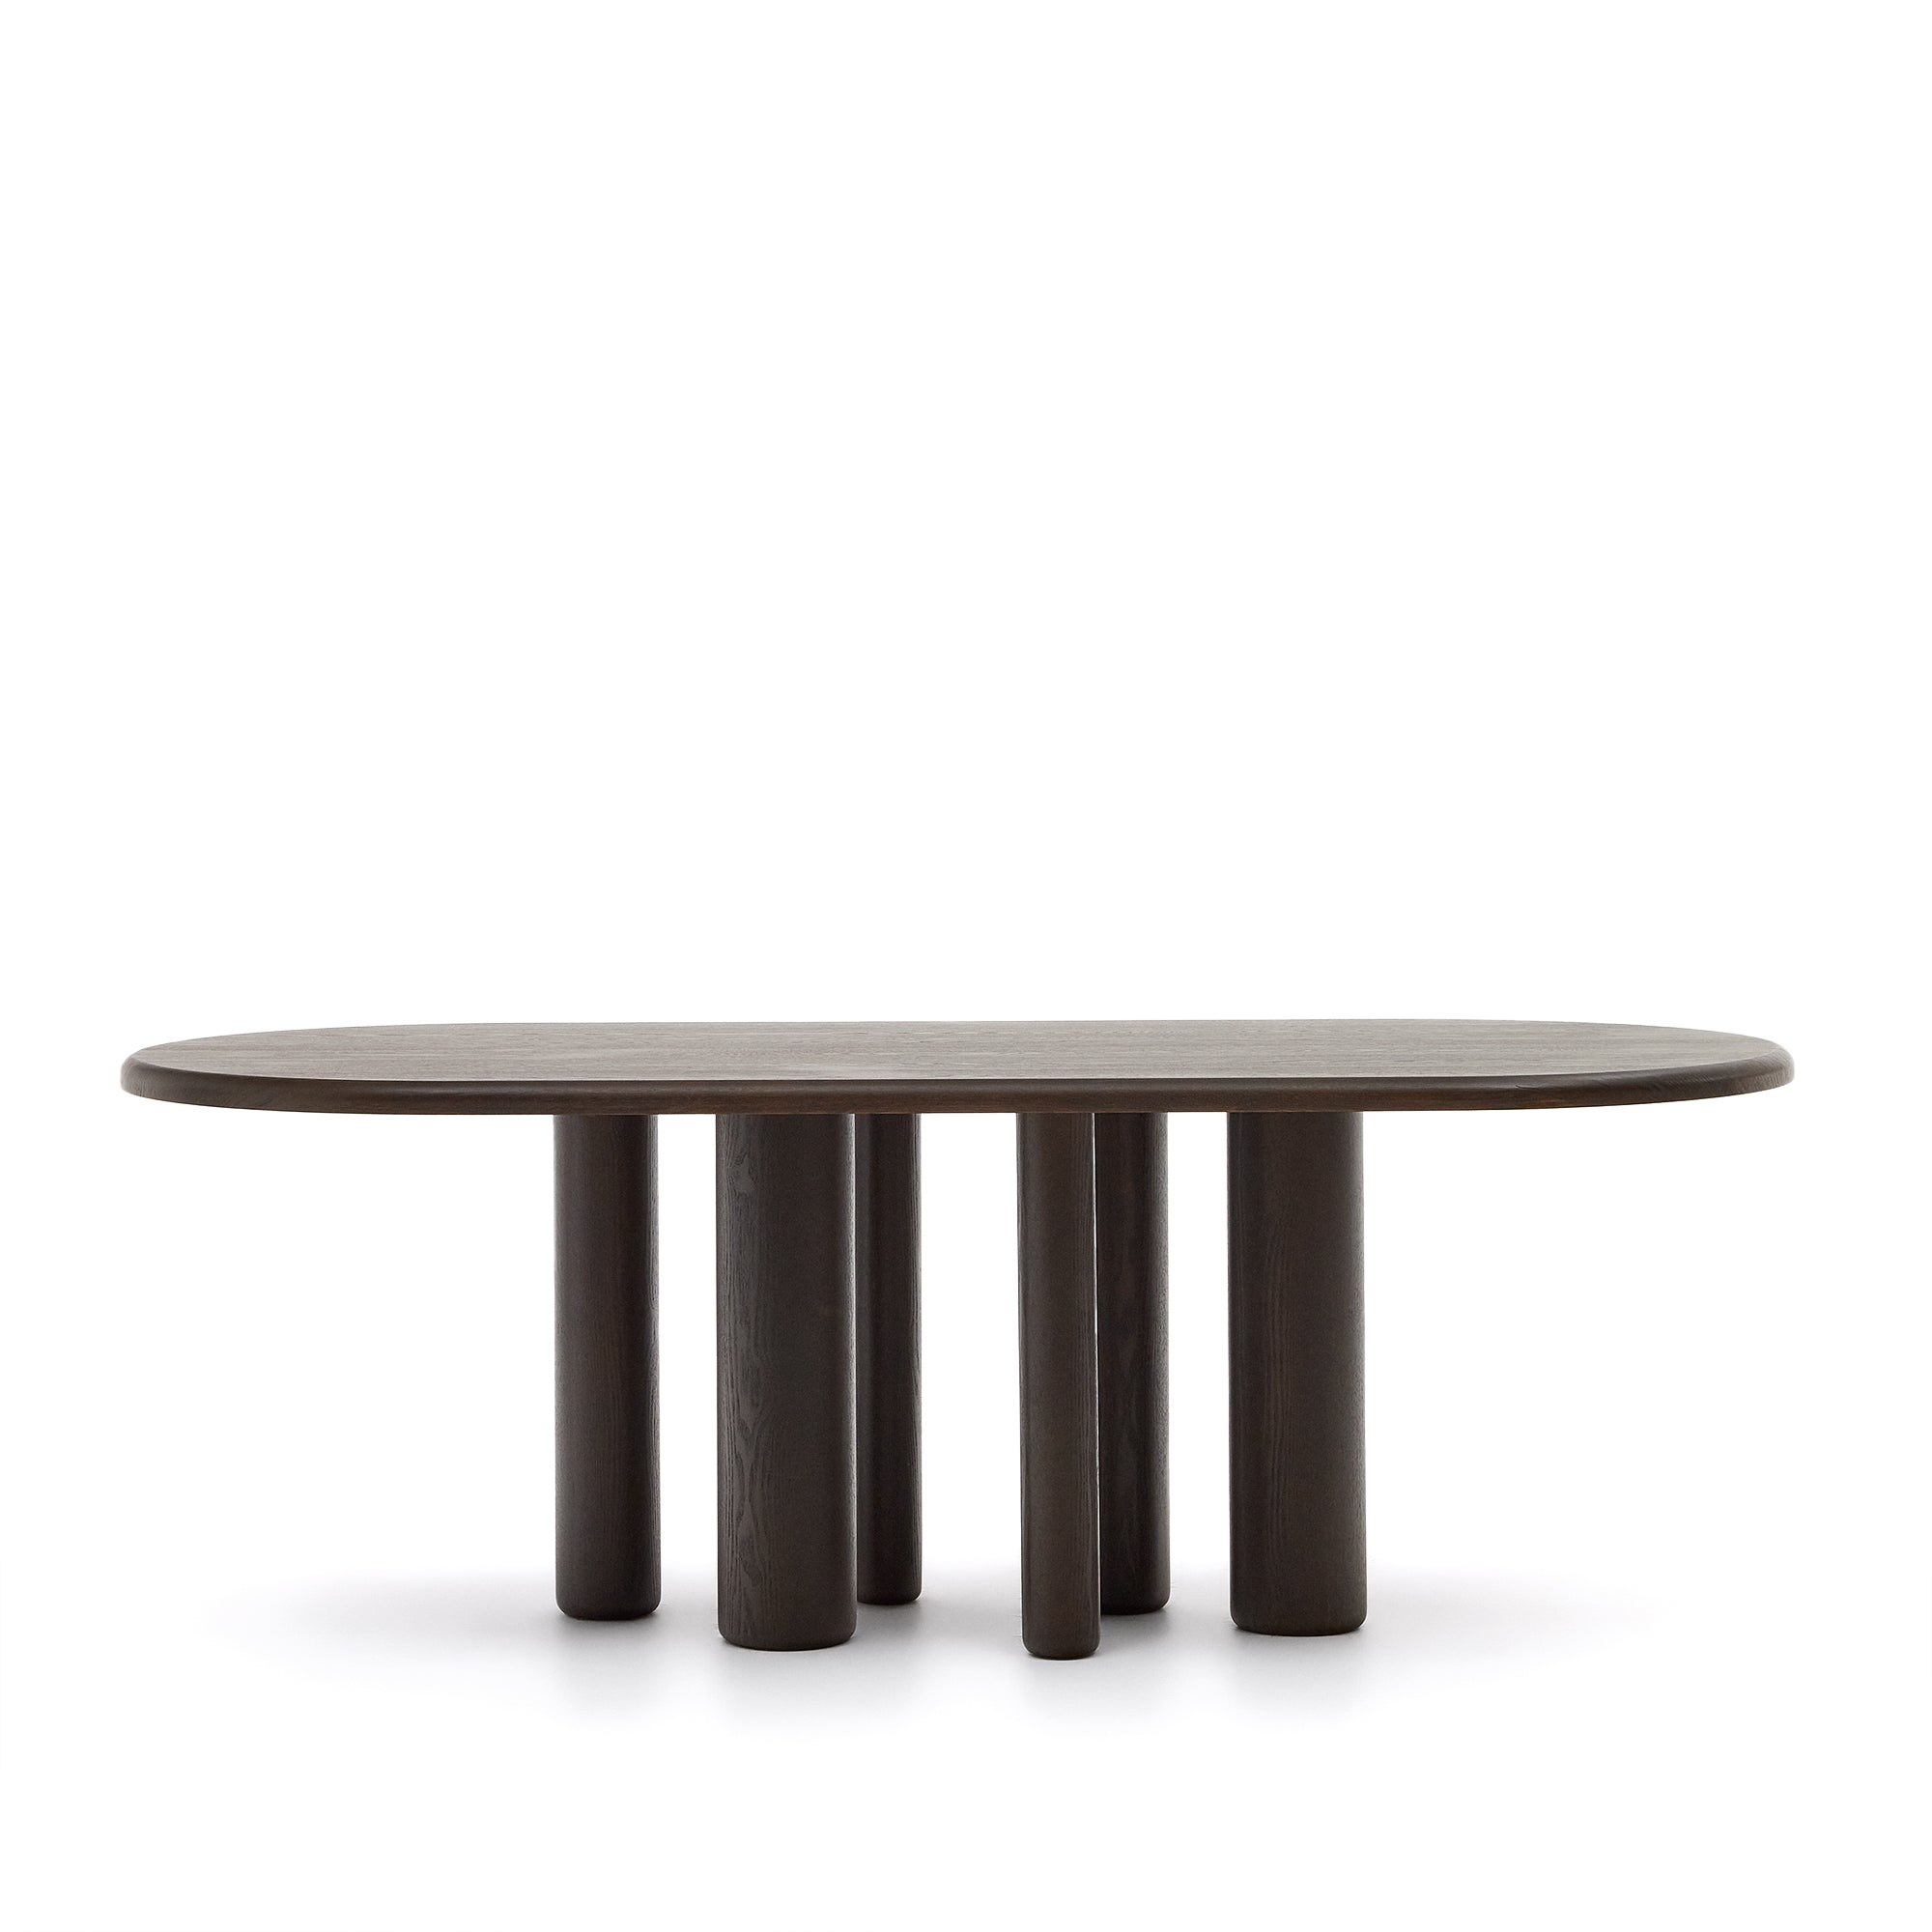 Mailen ovális asztal kőrisfa furnérból, sötét kivitelben, Ø 220 x 105 cm